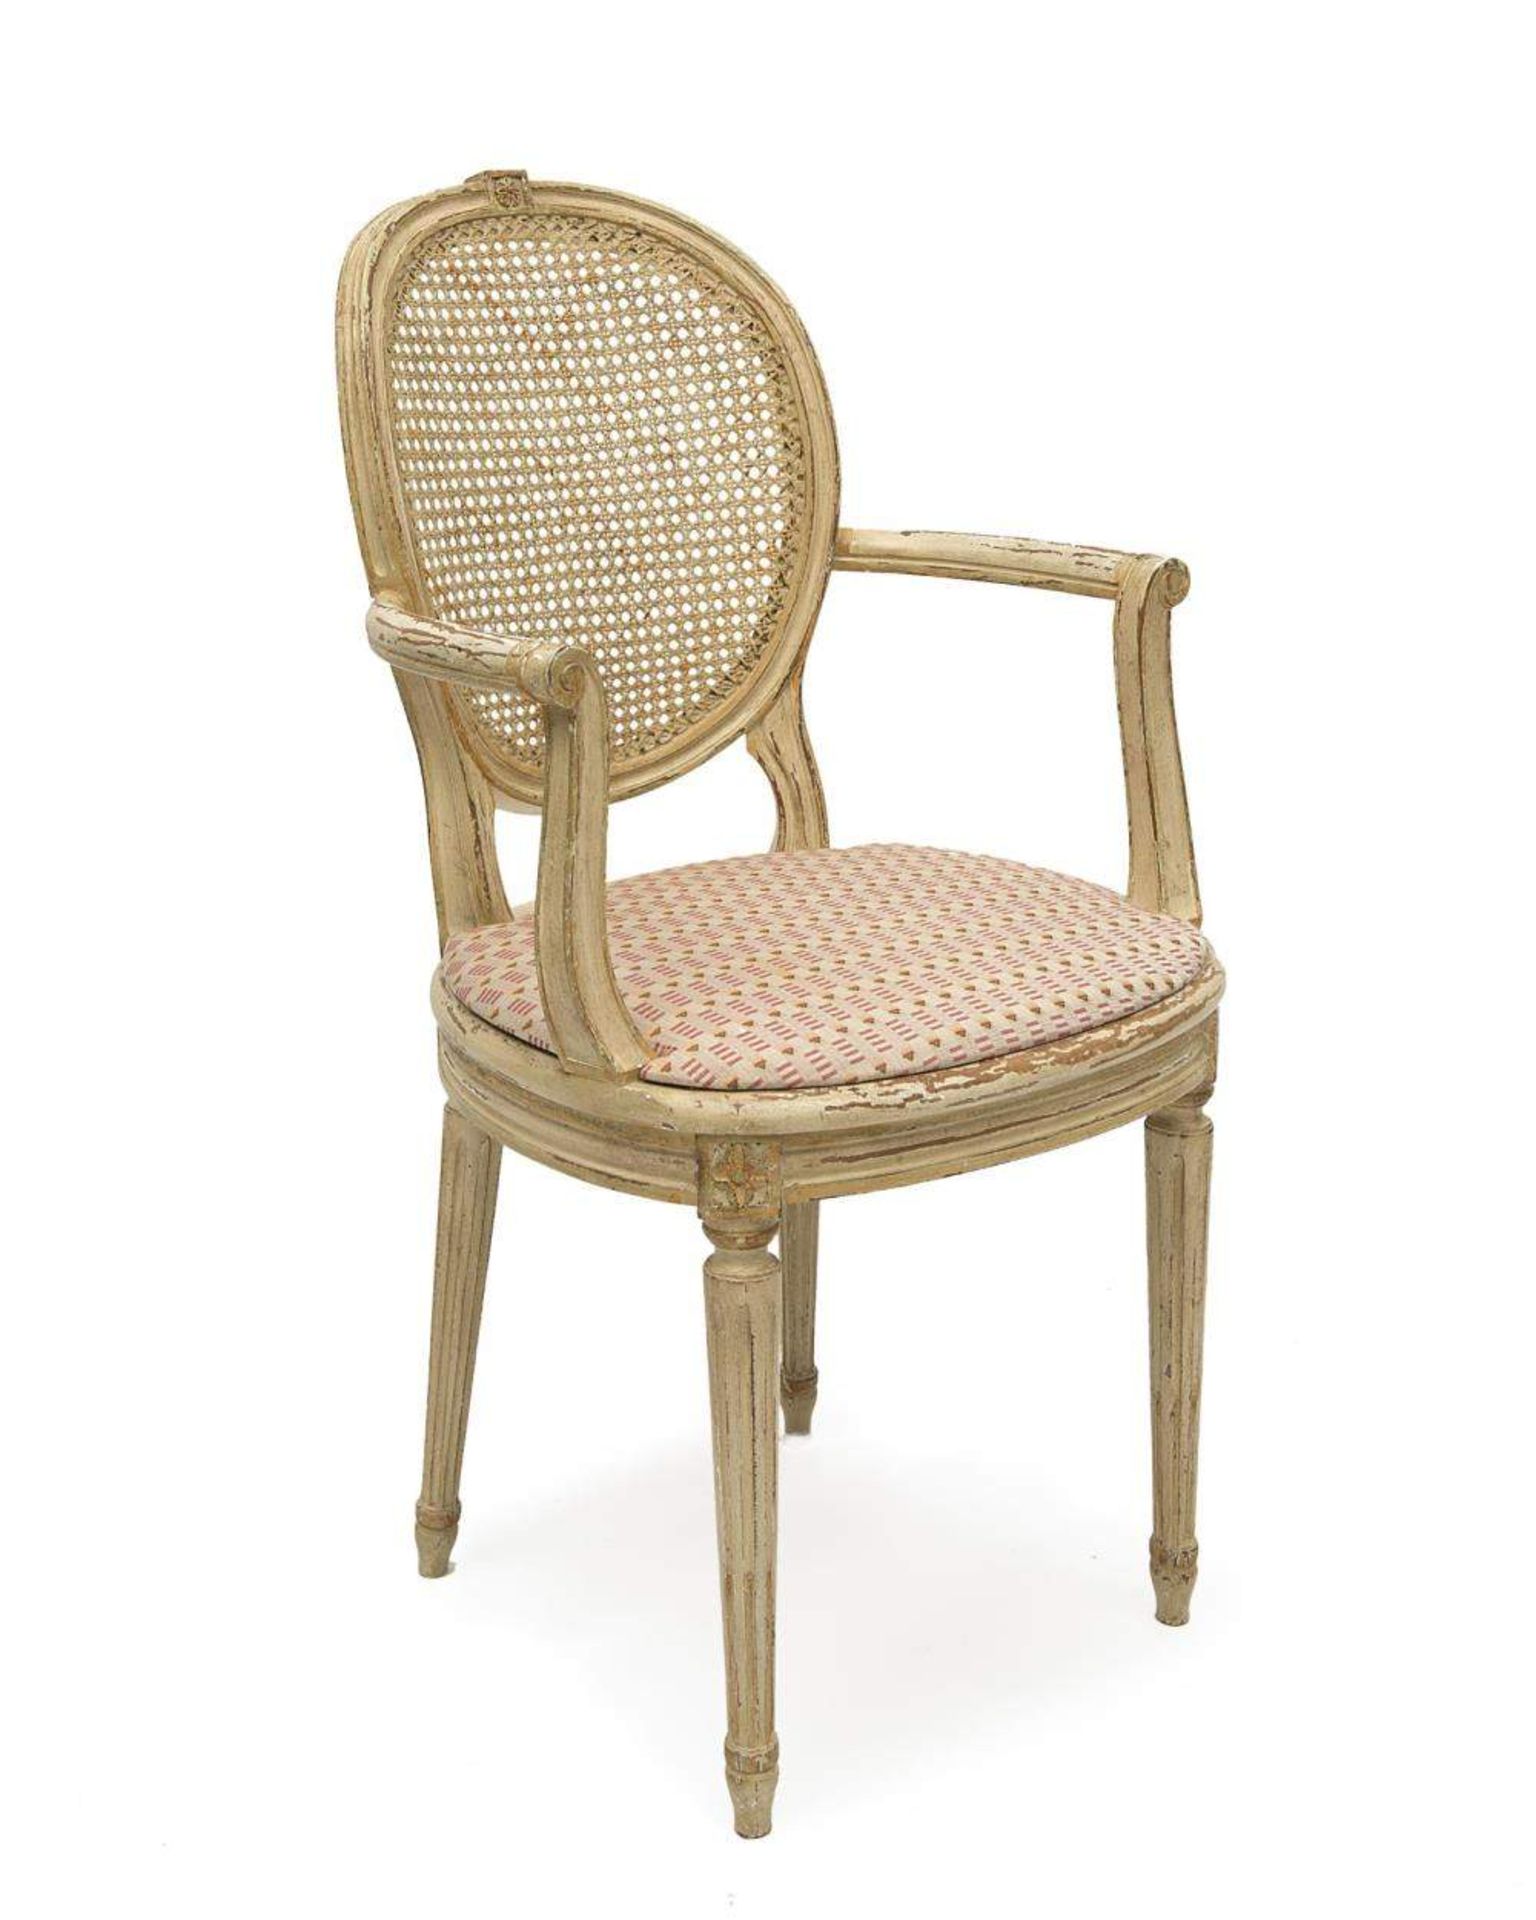 paire de fauteuils de style Louis XVI en bois peint blanc et assise et dossier canné

H. 94x57x53 - Image 2 of 3